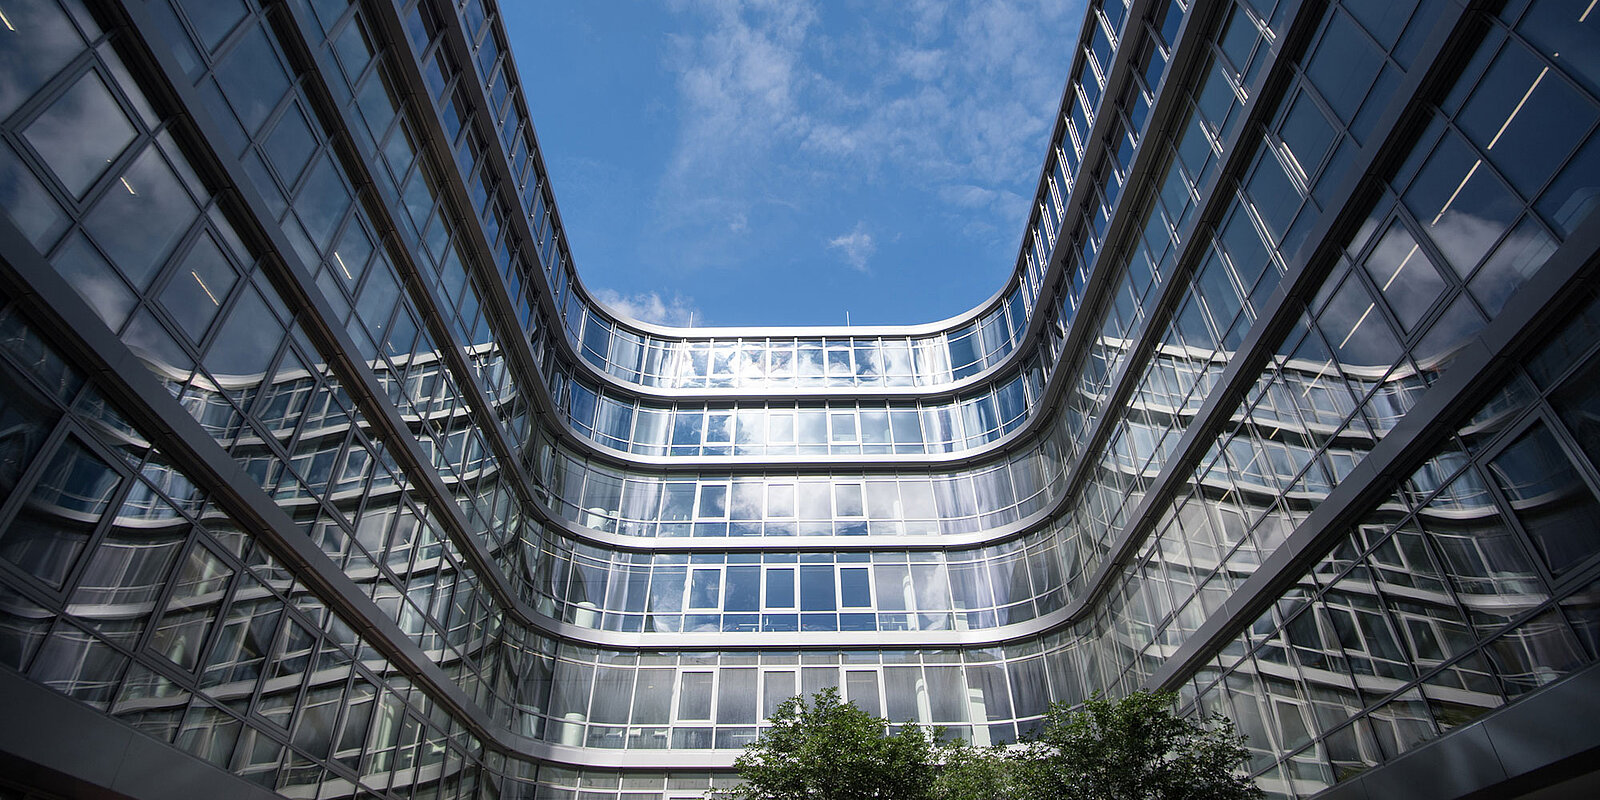 Bäume im offenen Innenhof der Siemens Zentrale umgeben von Glasfassade